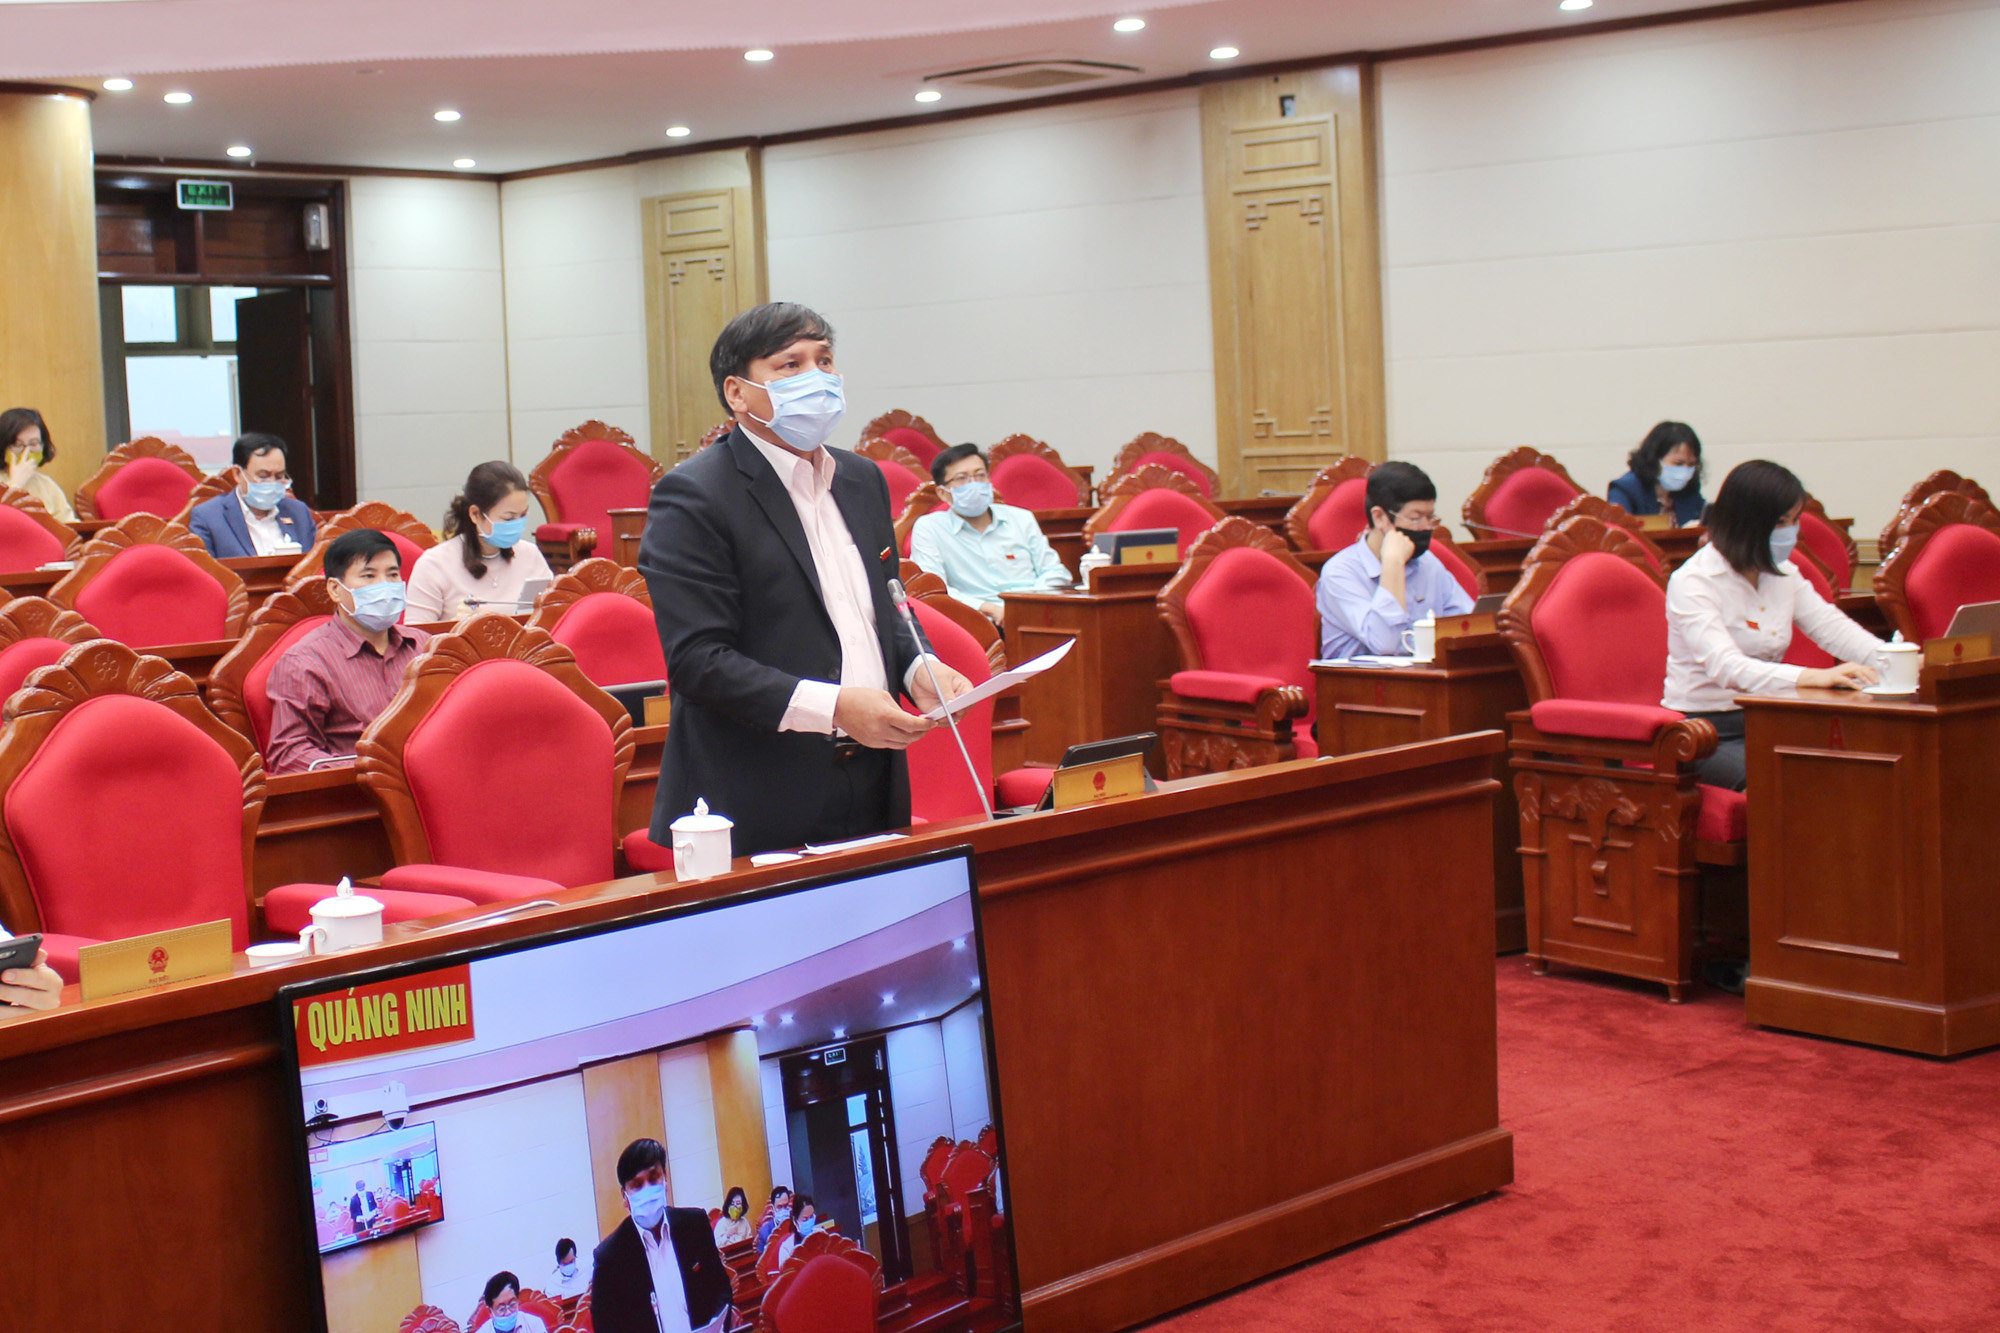 Đại biểu Vũ Văn Kinh, tổ đại biểu Móng Cái phát biểu thảo luận tại kỳ họp.